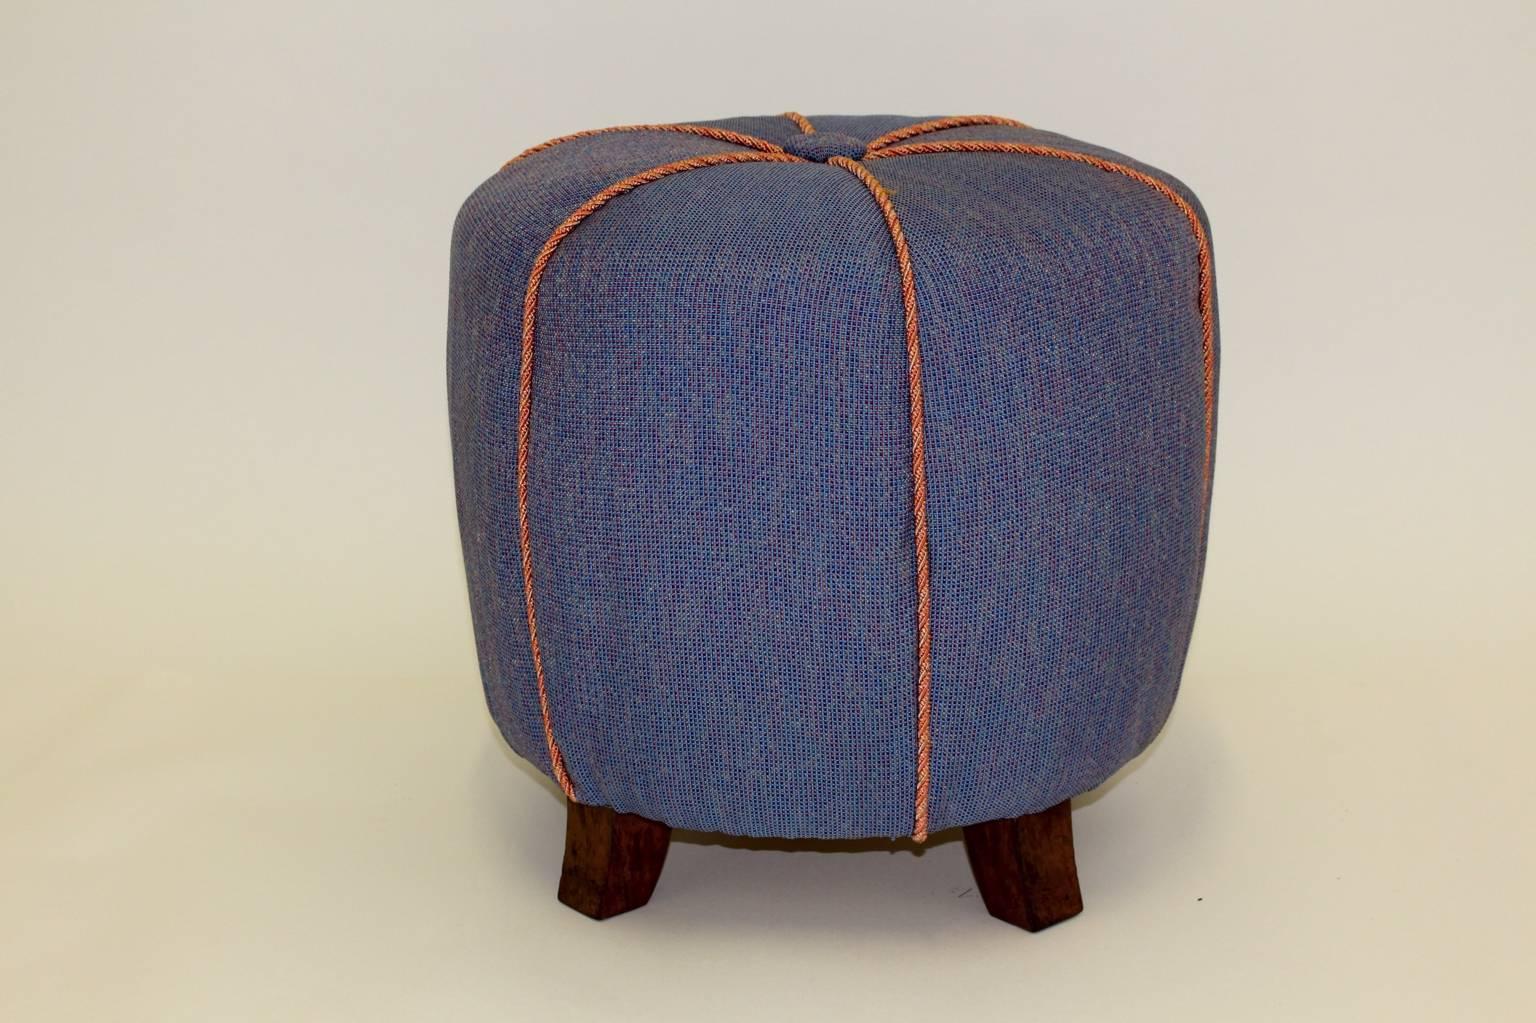 Art Deco vintage bleu Pouf ou ottoman ou tabouret en tissu bleu et hêtre 1930 Autriche.
Le tabouret est retapissé et recouvert d'un tissu bleu denim et de cordes roses et présente sa forme d'origine.
La surface des pieds en hêtre est polie à la main